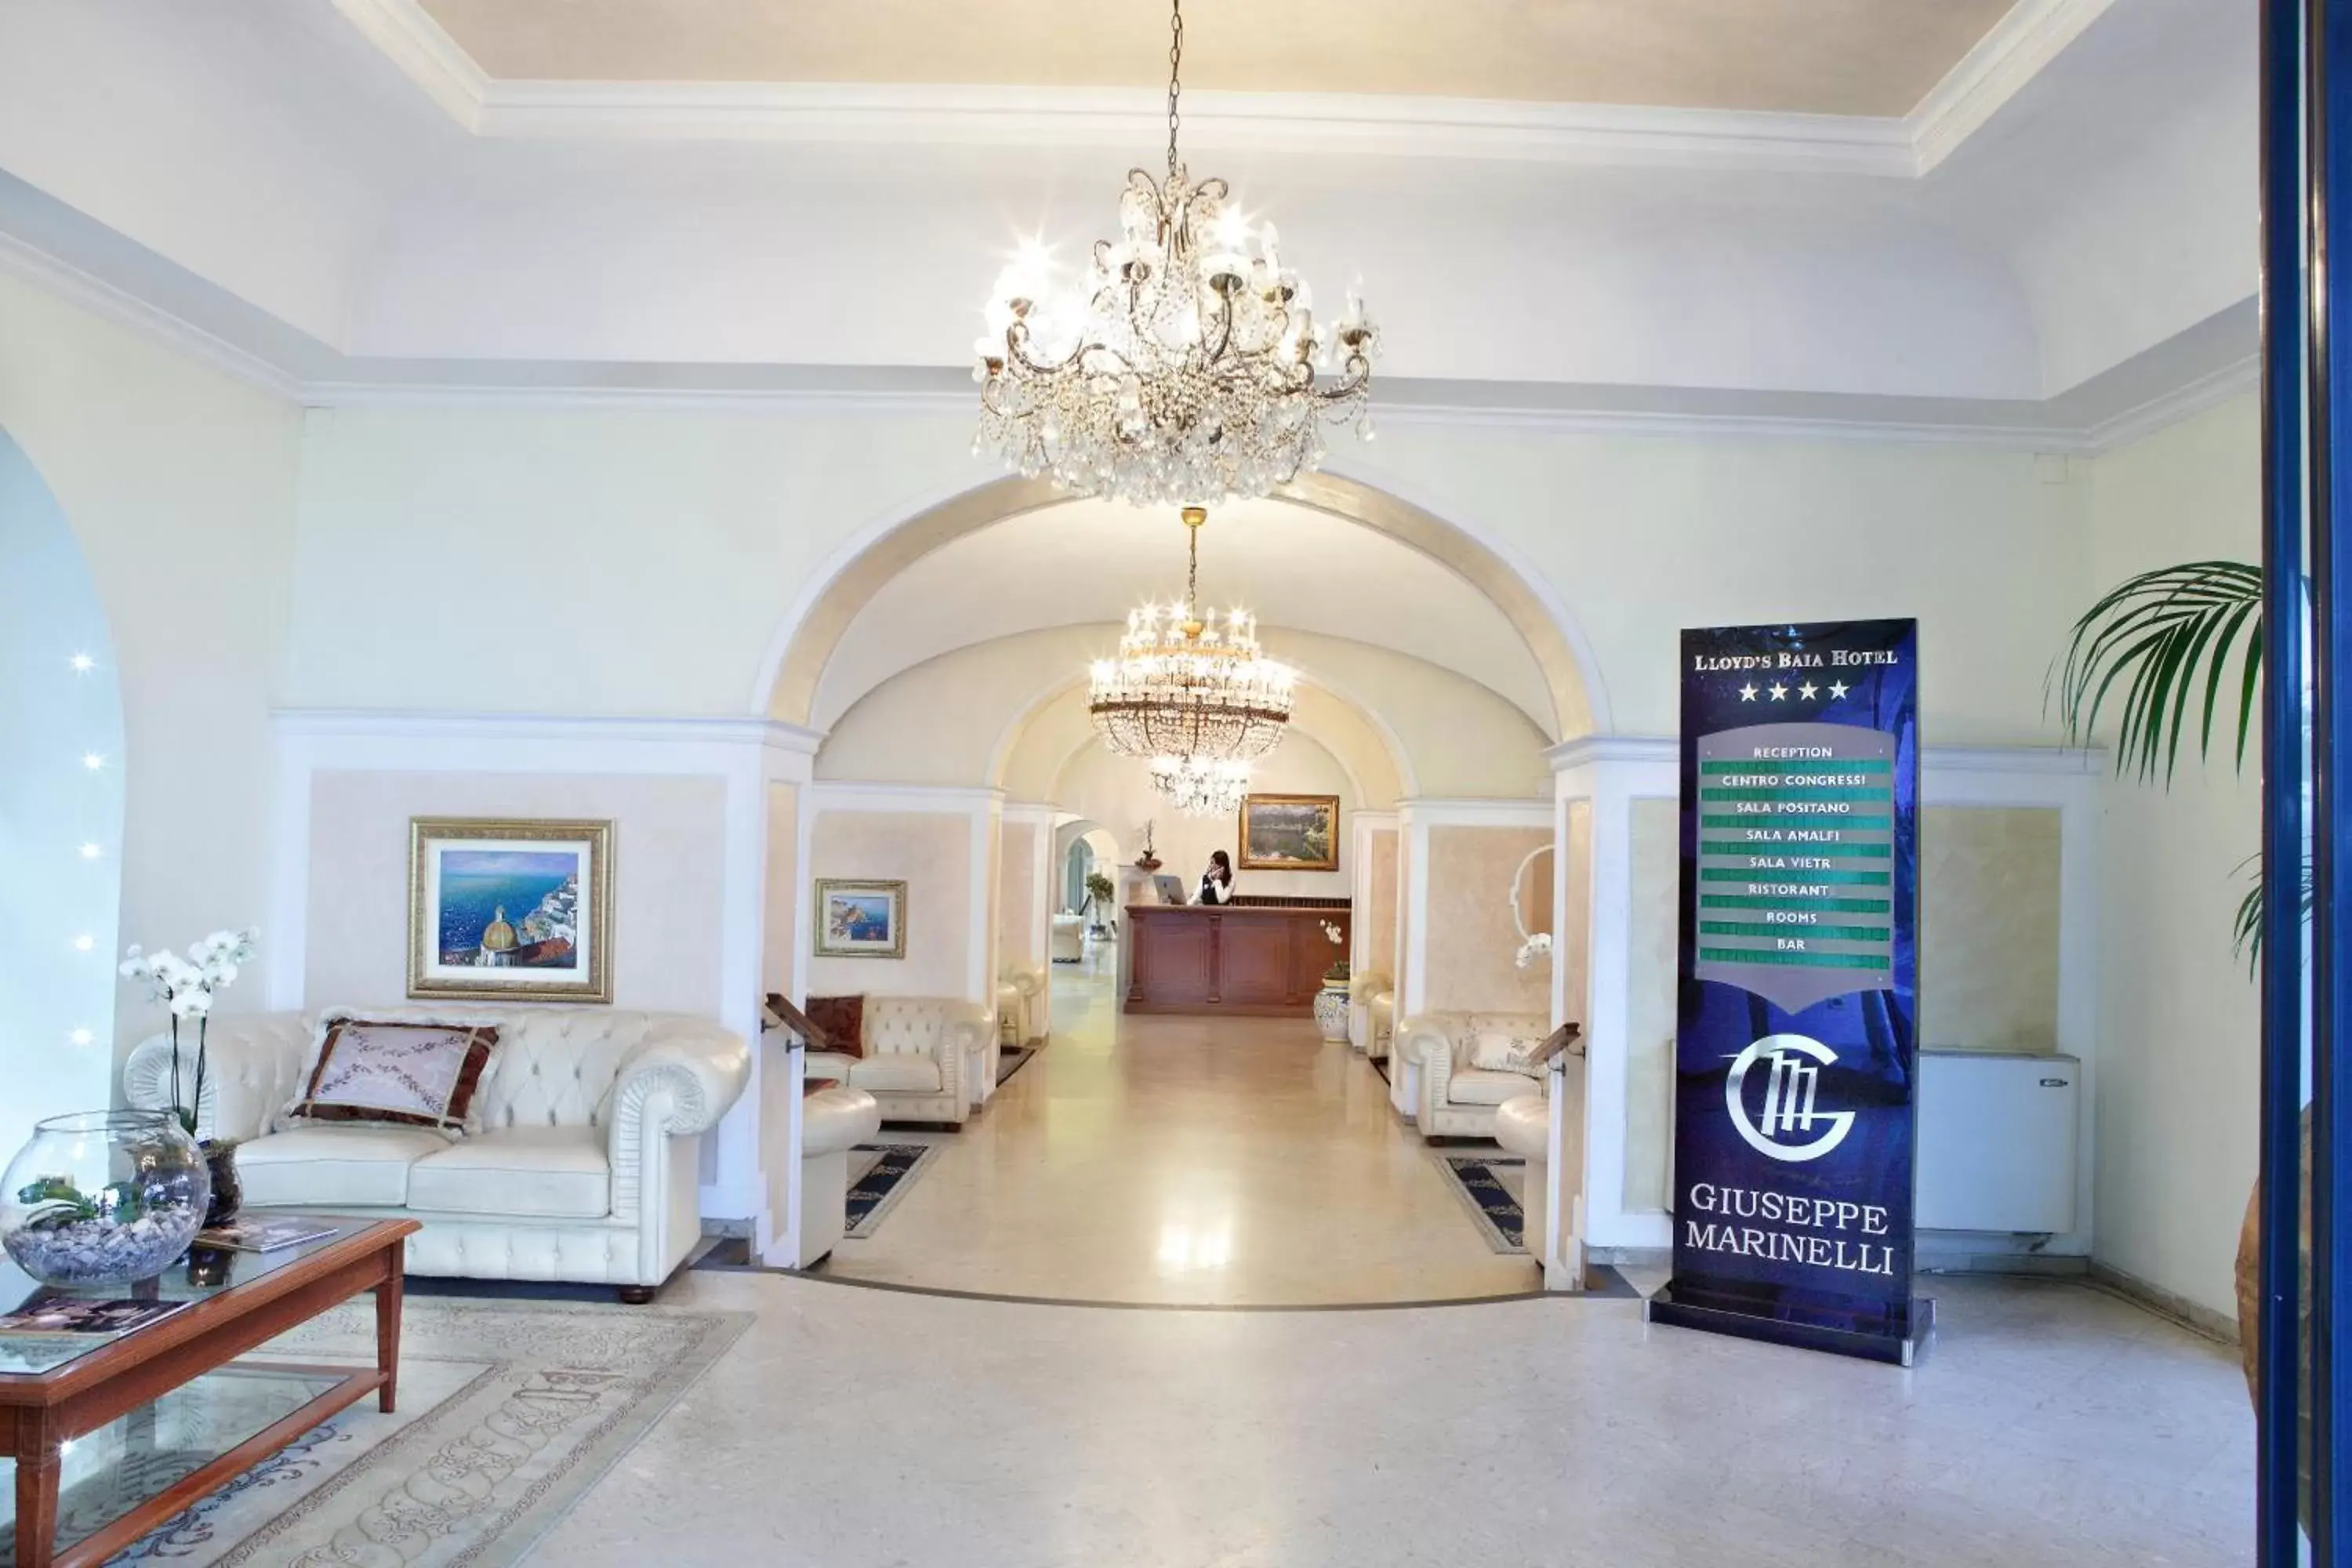 Lobby or reception in Lloyd's Baia Hotel